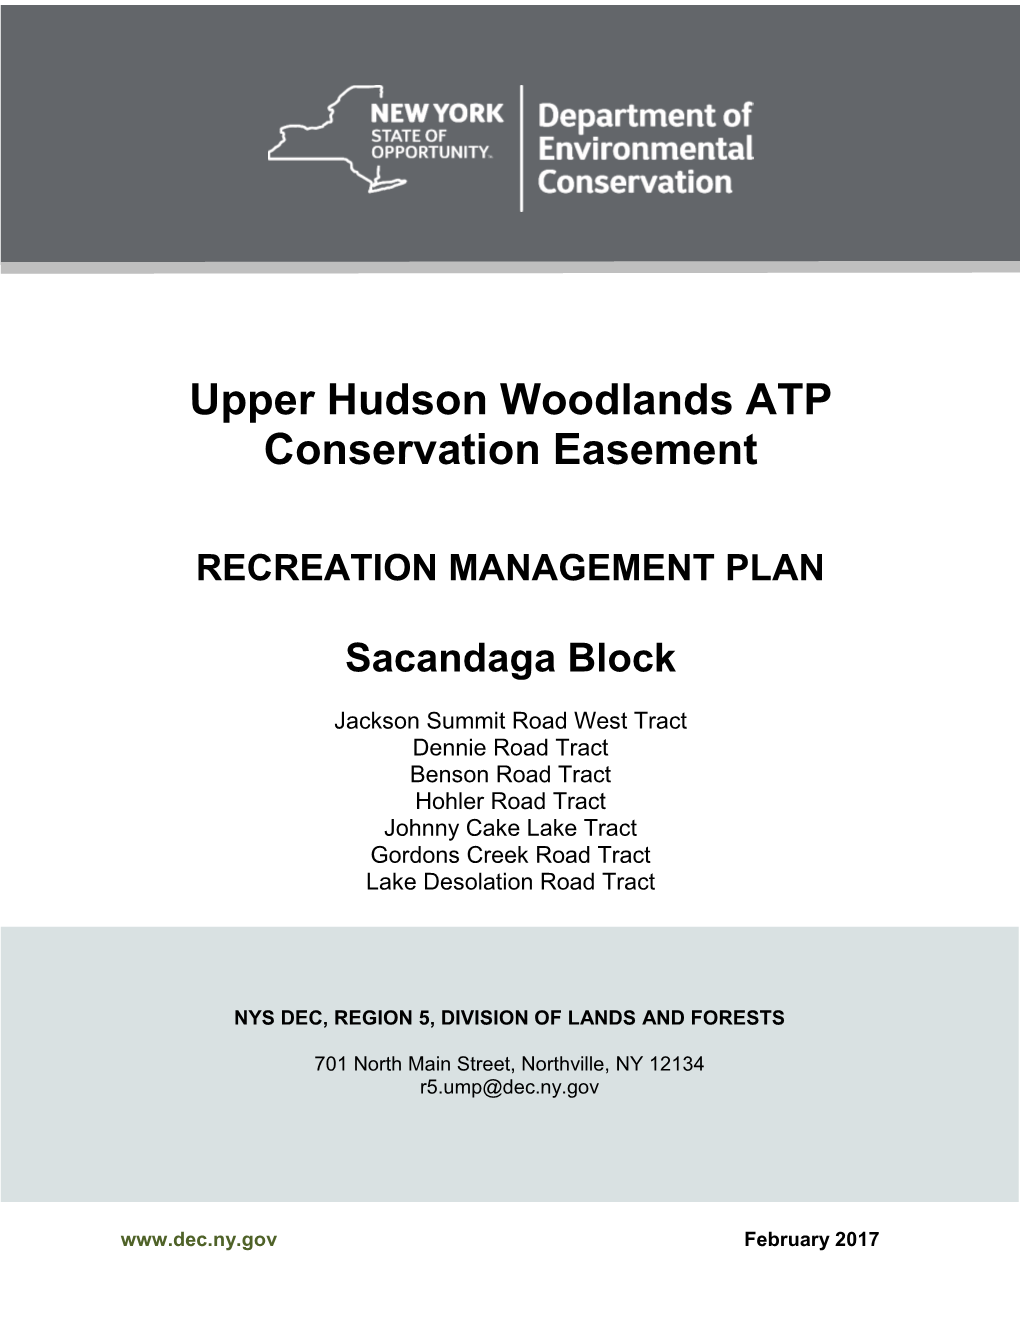 Upper Hudson Woodlands ATP Conservation Easement